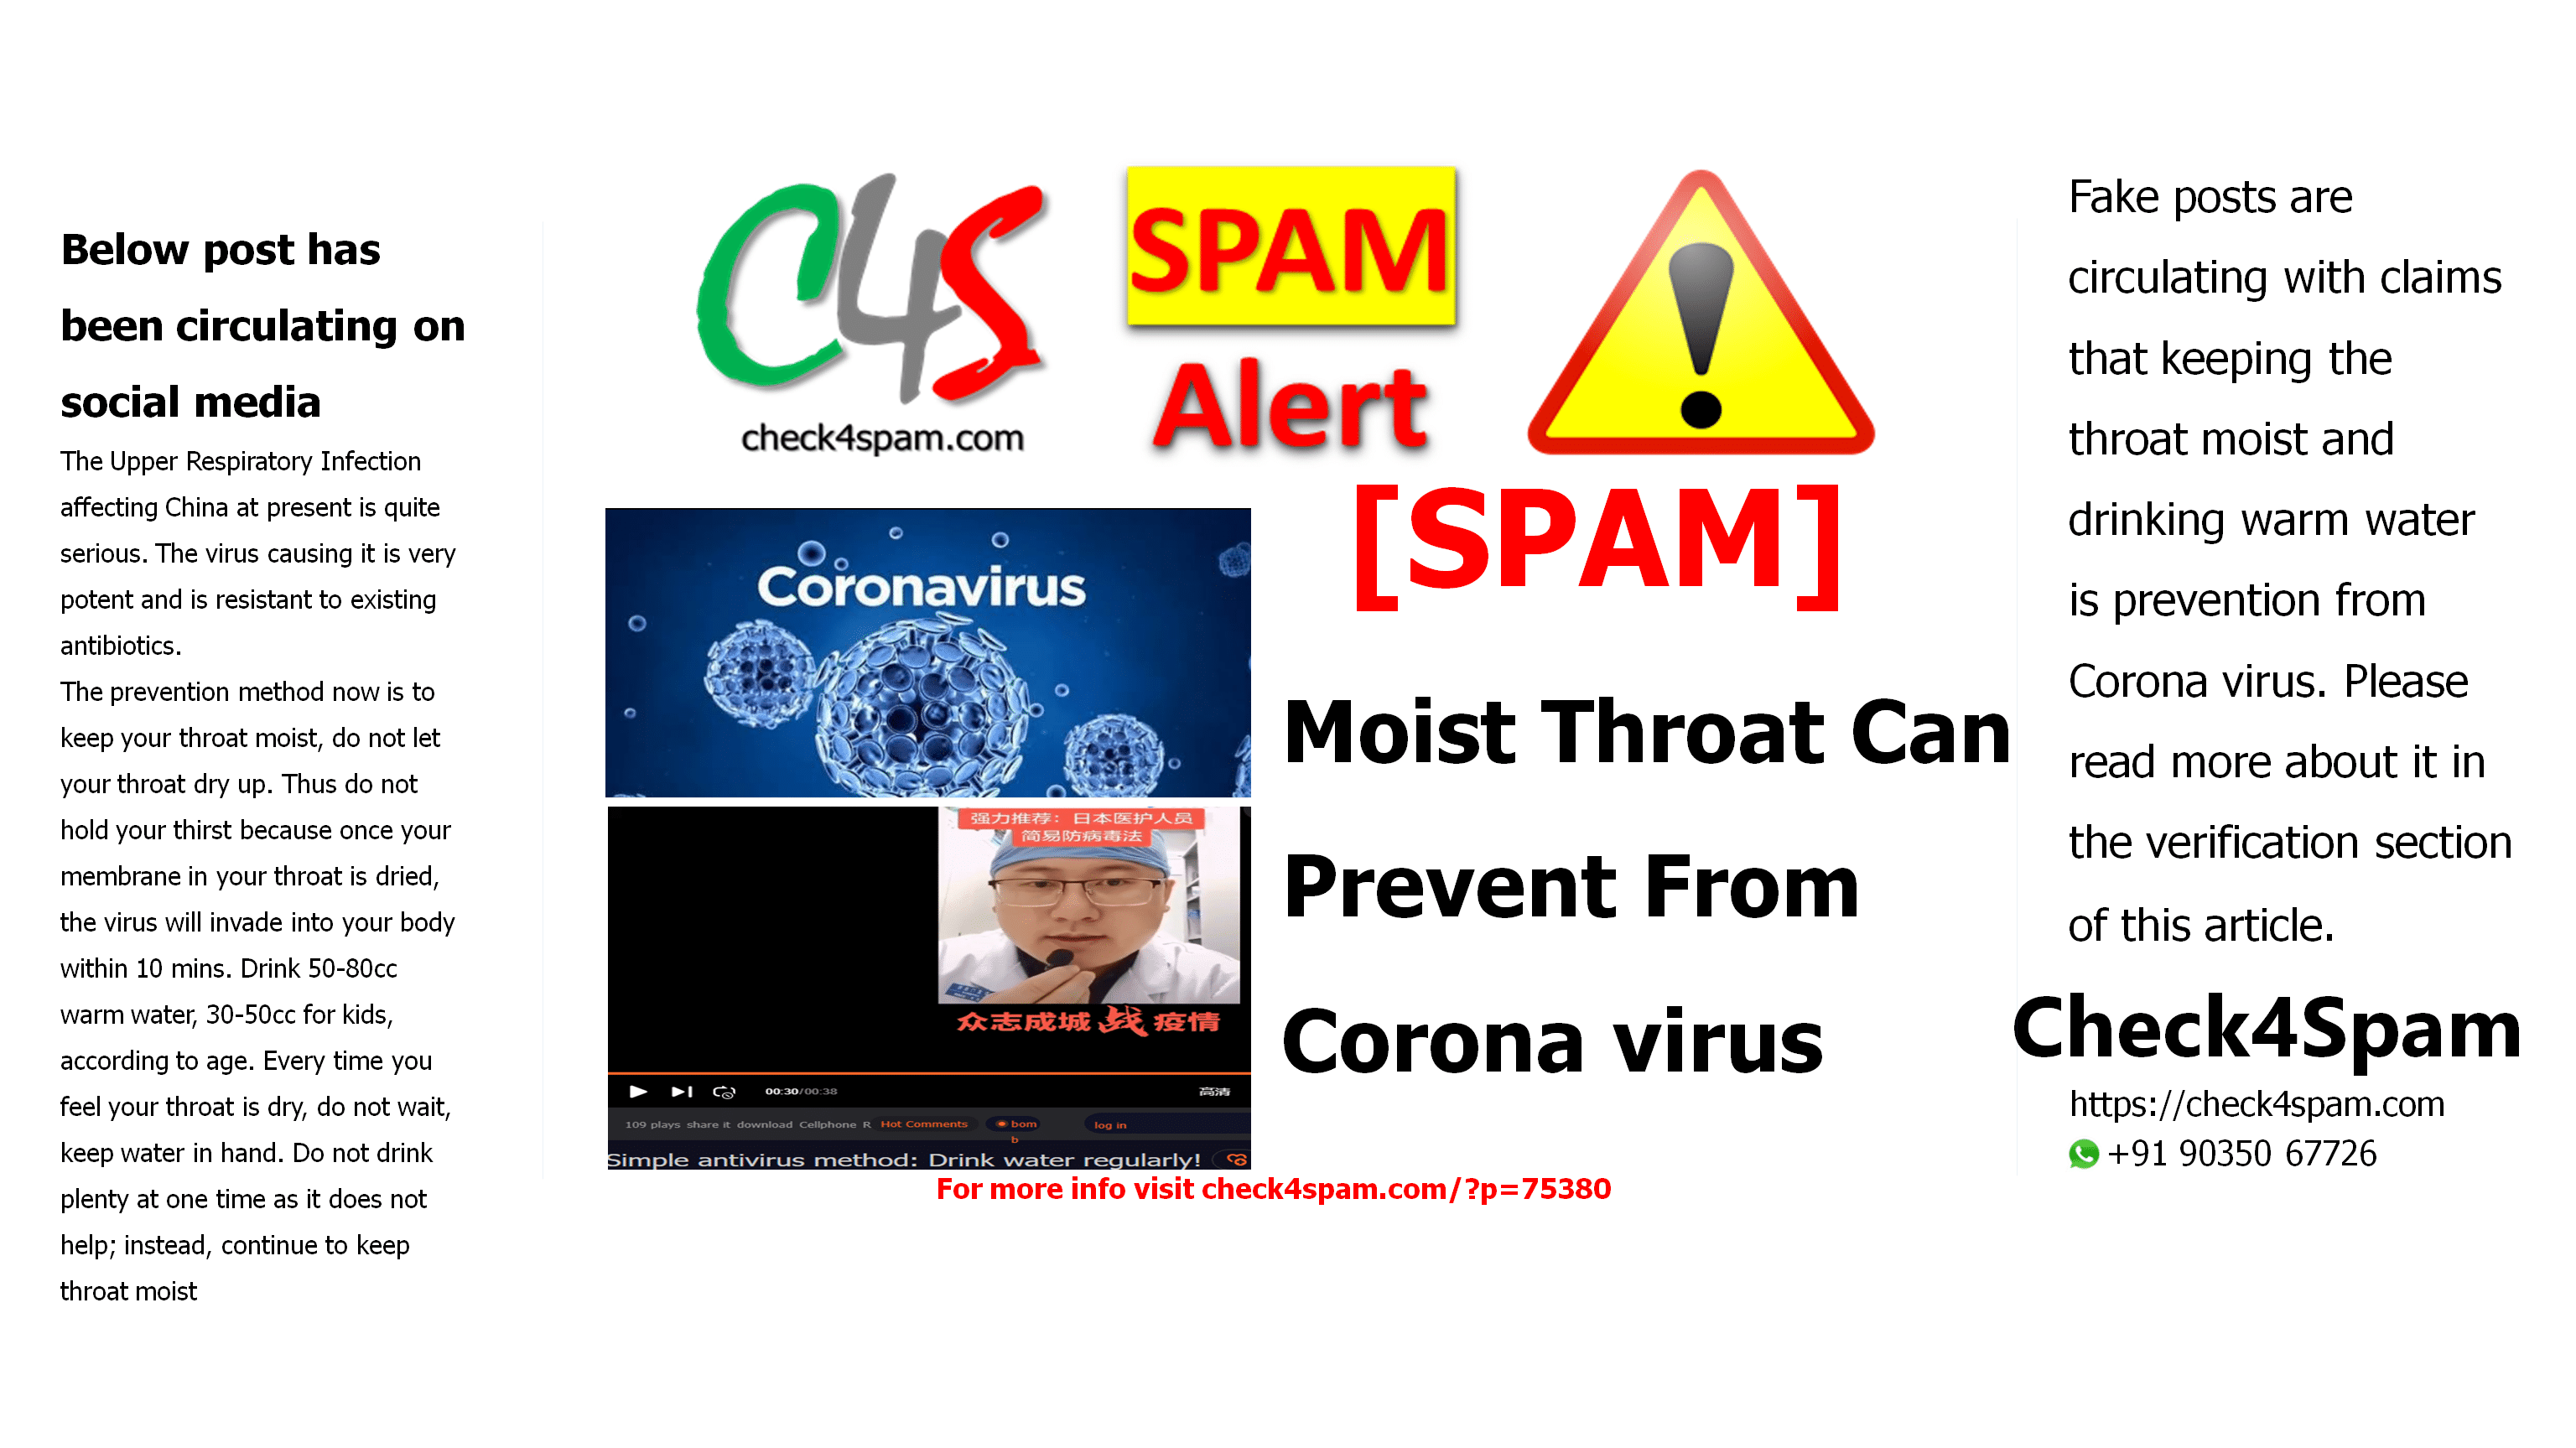 Moist Throat Can Prevent From Coronavirus